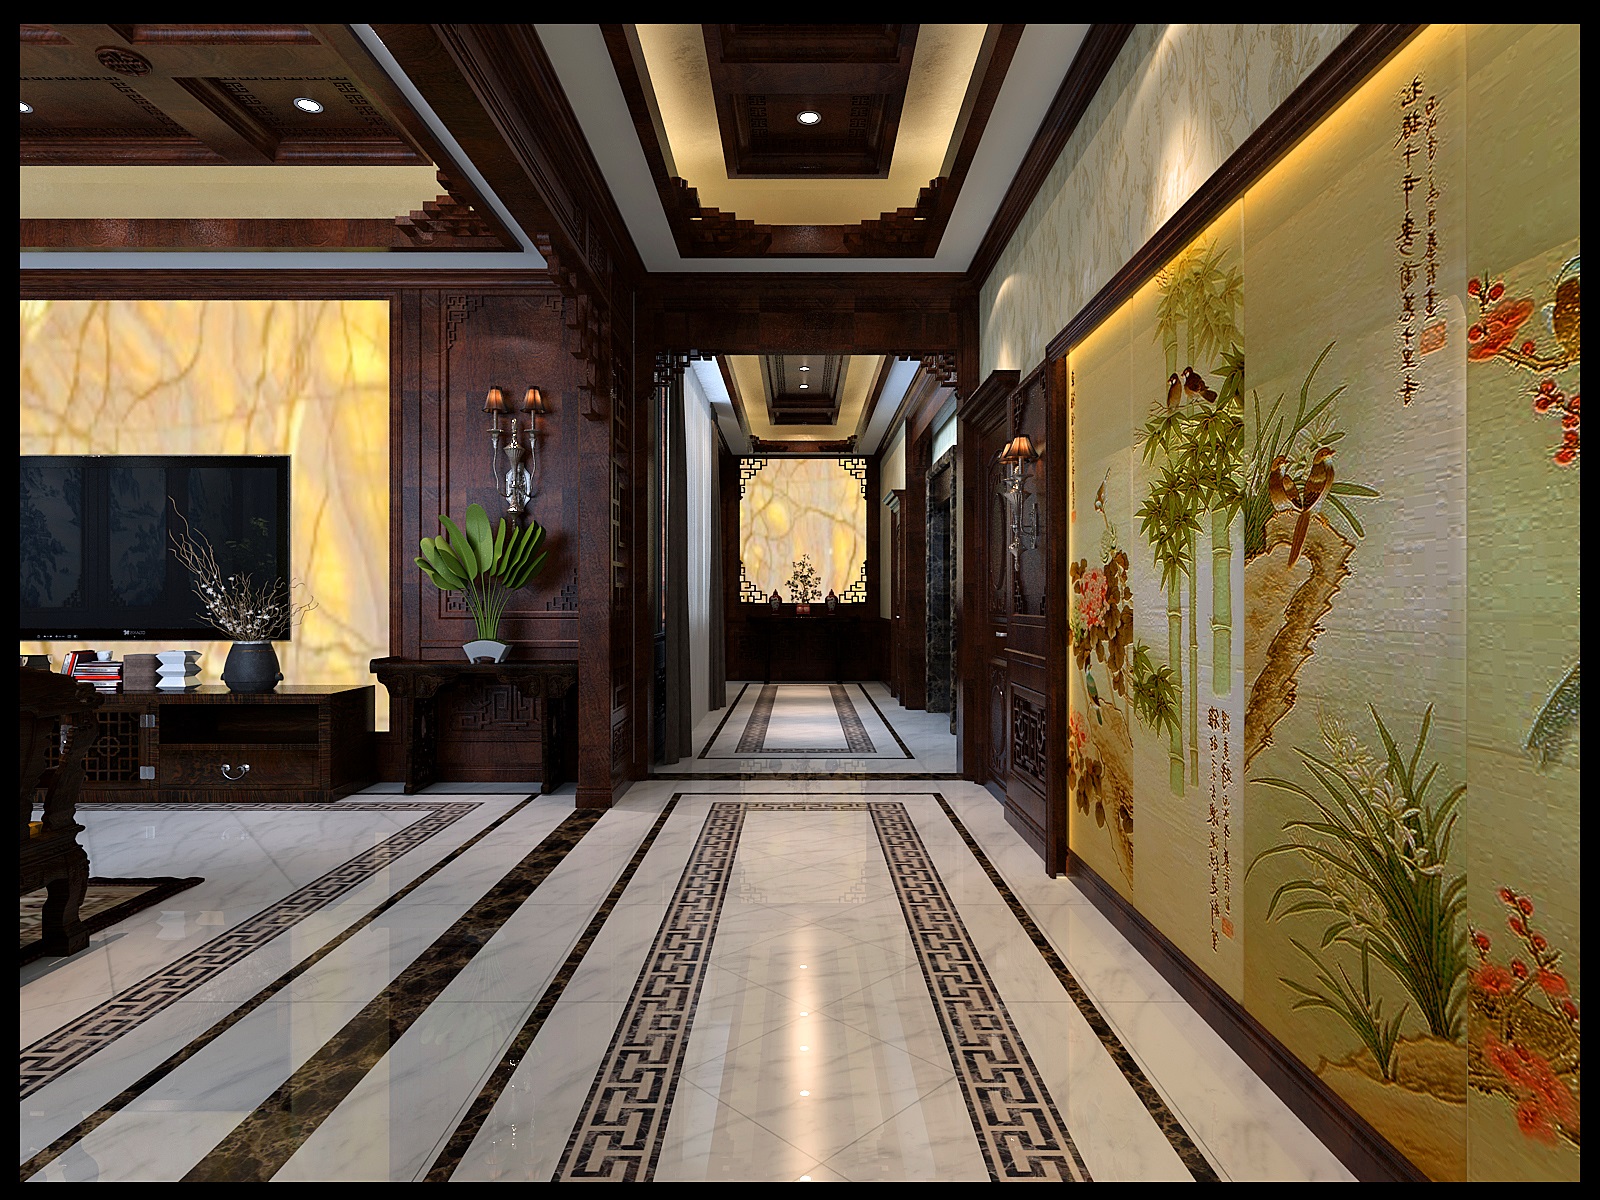 中式风情,墙面上的精致壁挂,装饰画,优雅气质和生活的品质感;地面的